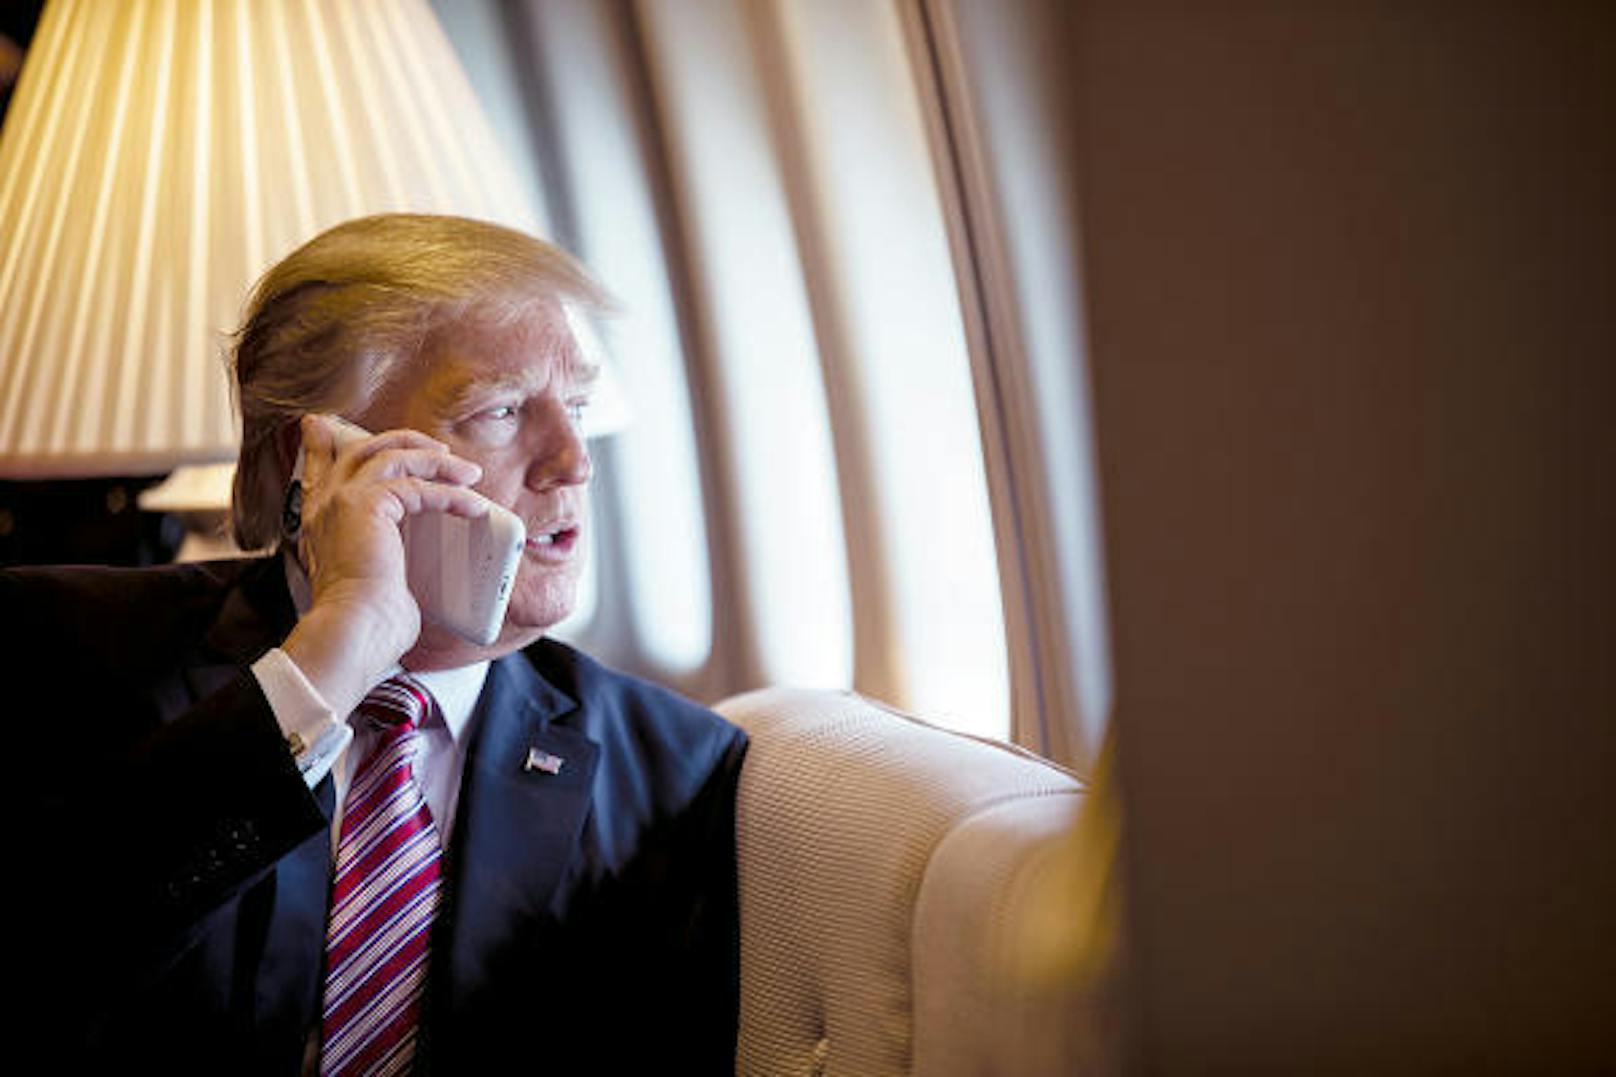 <b>21. Mai 2018:</b> Donald Trump läuft durch seine Handy-Nutzung Gefahr, gehackt zu werden, berichtet Politico.com. Der amerikanische Präsident nutze mindestens zwei iPhones, eines für Anrufe und eines für Twitter. Im Gegensatz zum Smartphone von Barack Obama, bei dem alle Funktionen außer E-Mails gesperrt wurden, sind bei Trump die Kamera und das Mikrofon aktiv. Ein Hacker könnte so möglicherweise Trump überwachen. Zwar werde das iPhone zum Telefonieren aus Sicherheitsgründen regelmäßig ausgetauscht. Berater hätten den US-Präsidenten zudem aufgefordert, auch sein Twitter-Handy austauschen zu lassen. Doch das sei ihm "zu umständlich".